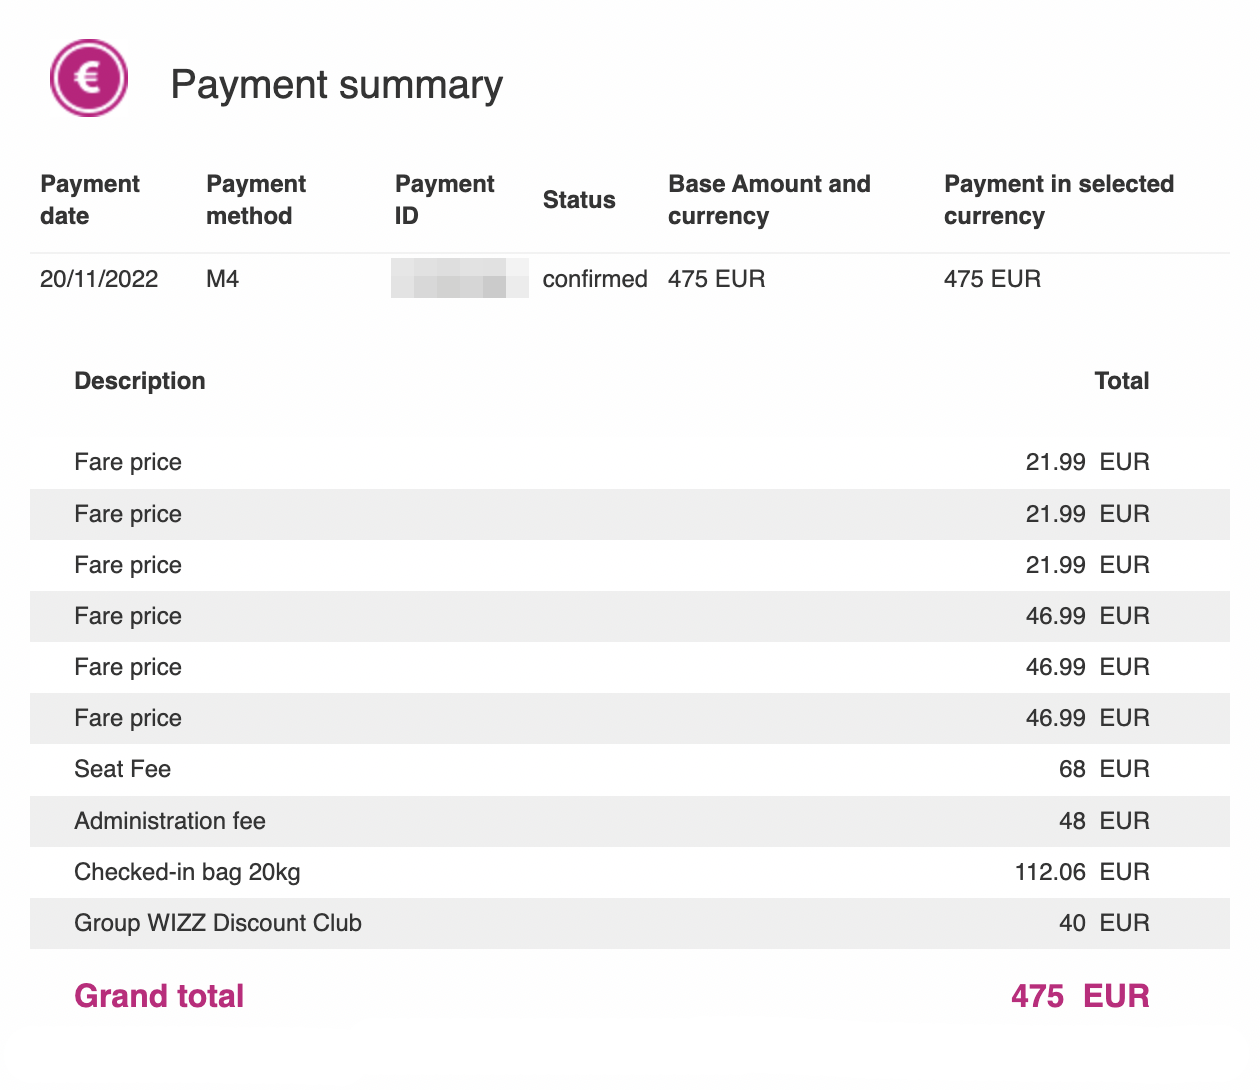 Семье моей знакомой перелет с лоукостером Wizz Air из Ларнаки в Белград и обратно обошелся в 475 € на троих. Четверть суммы — провоз одного чемодана в обе стороны. Если бы знакомая полетела одна, за тот же багаж заплатила бы почти в два раза больше, чем за сами билеты